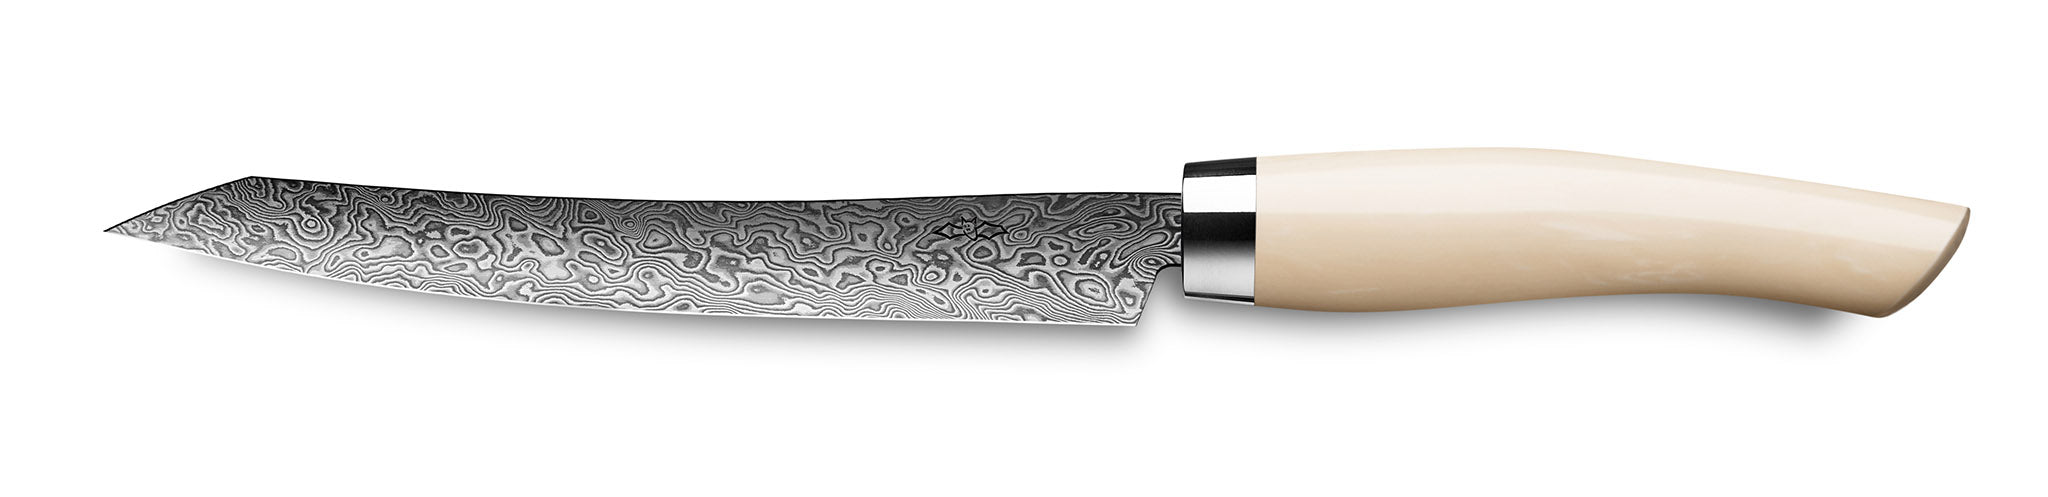 Nesmuk Tranchiermesser Slicer C90 mit Klinge aus Damaszener Stahl und Griff aus Juma Ivory Hightech Kunststoff